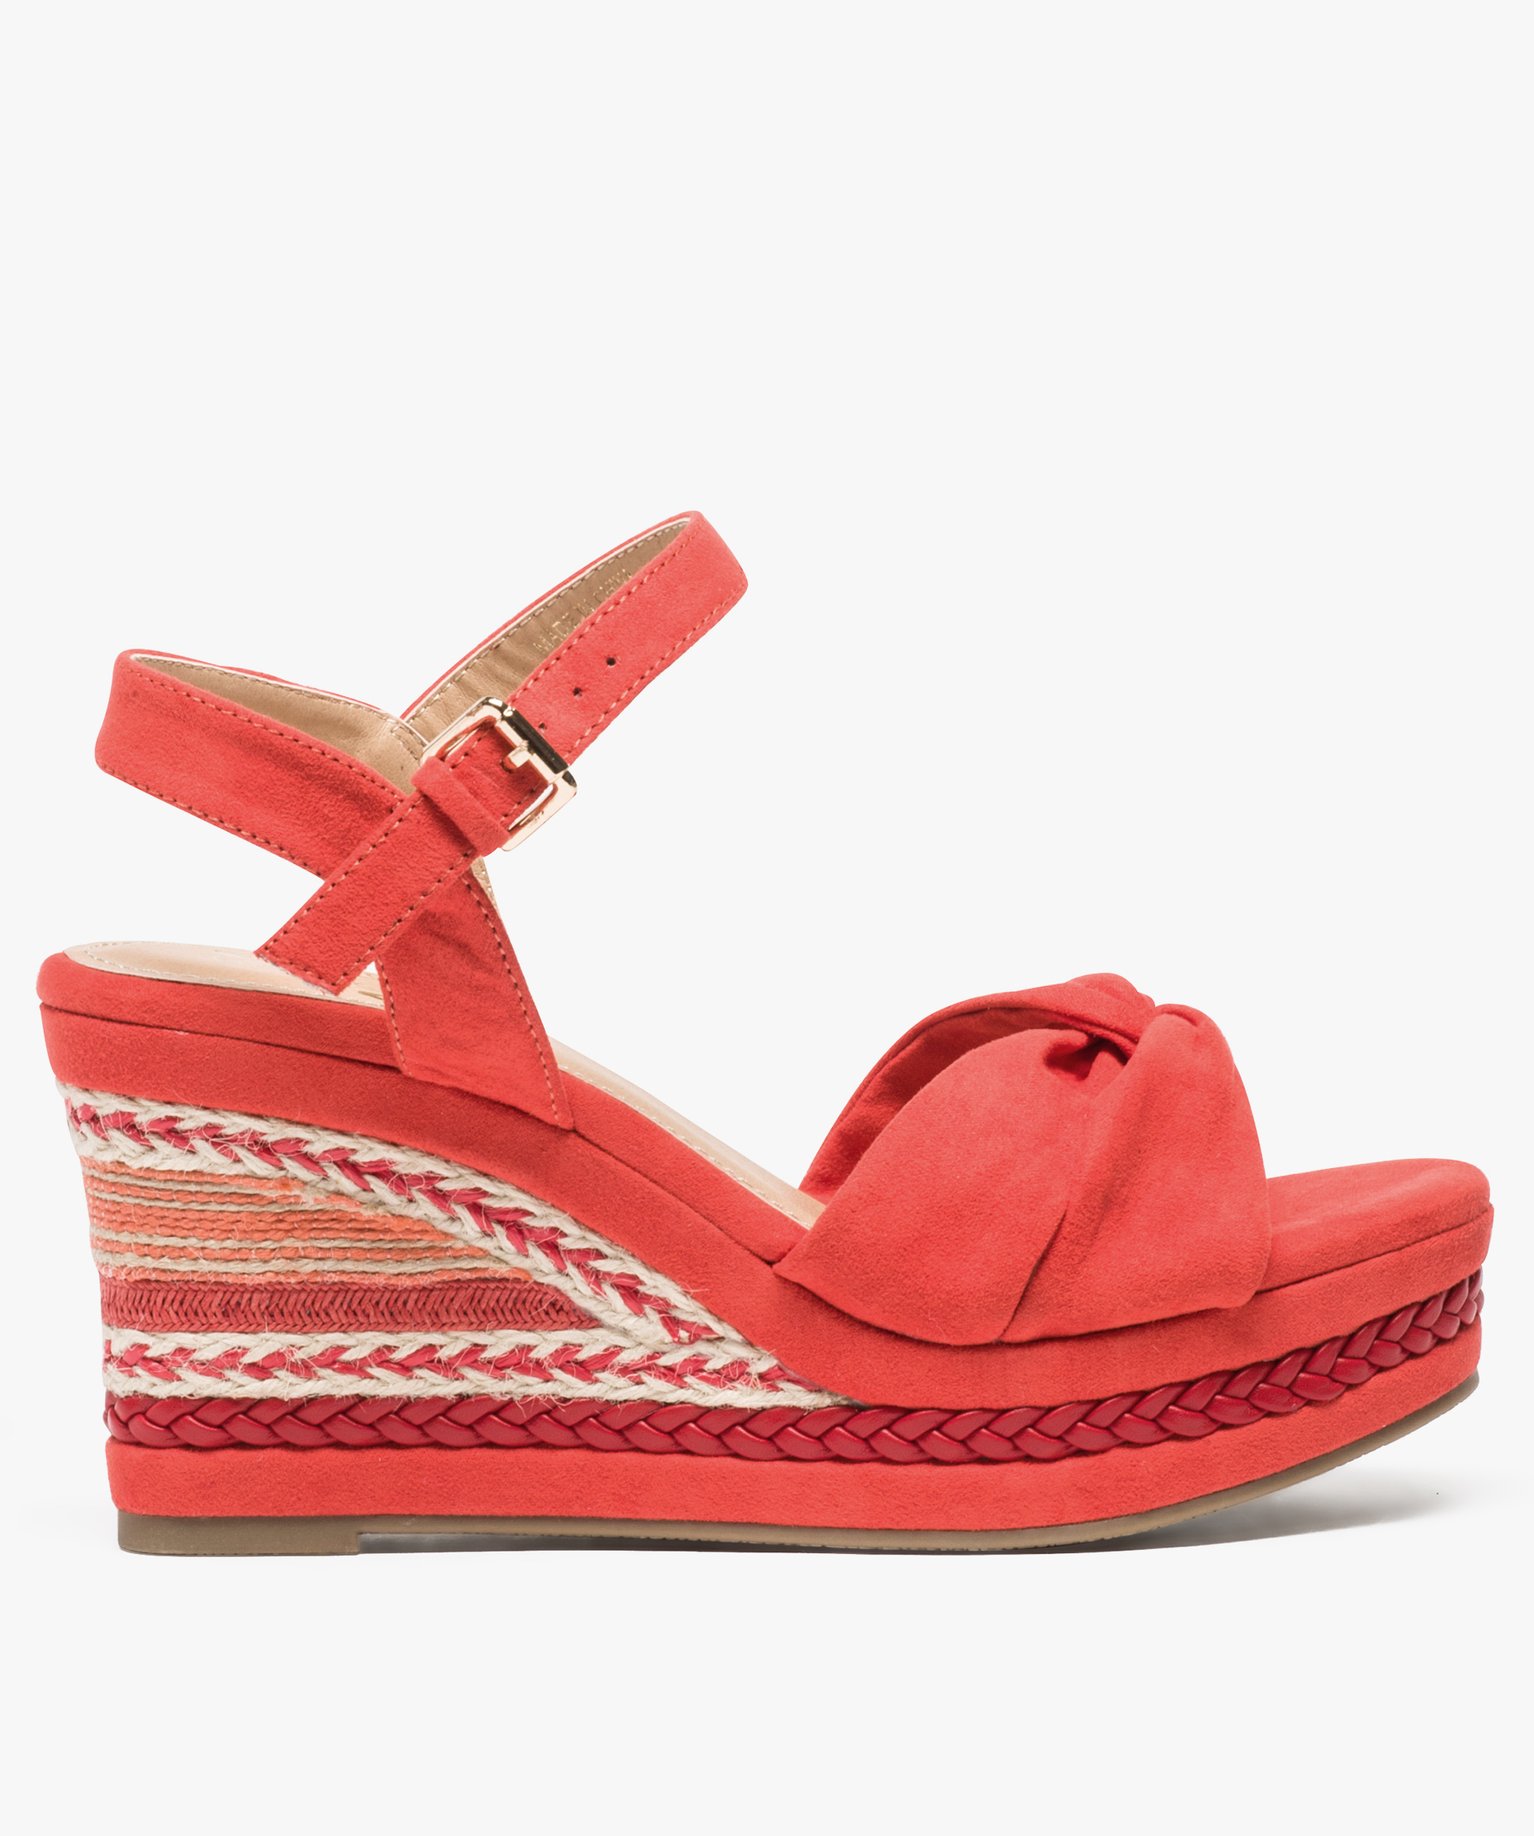 Espadrilles Cuir Geox en coloris Rouge Femme Chaussures Chaussures à talons Sandales compensées 